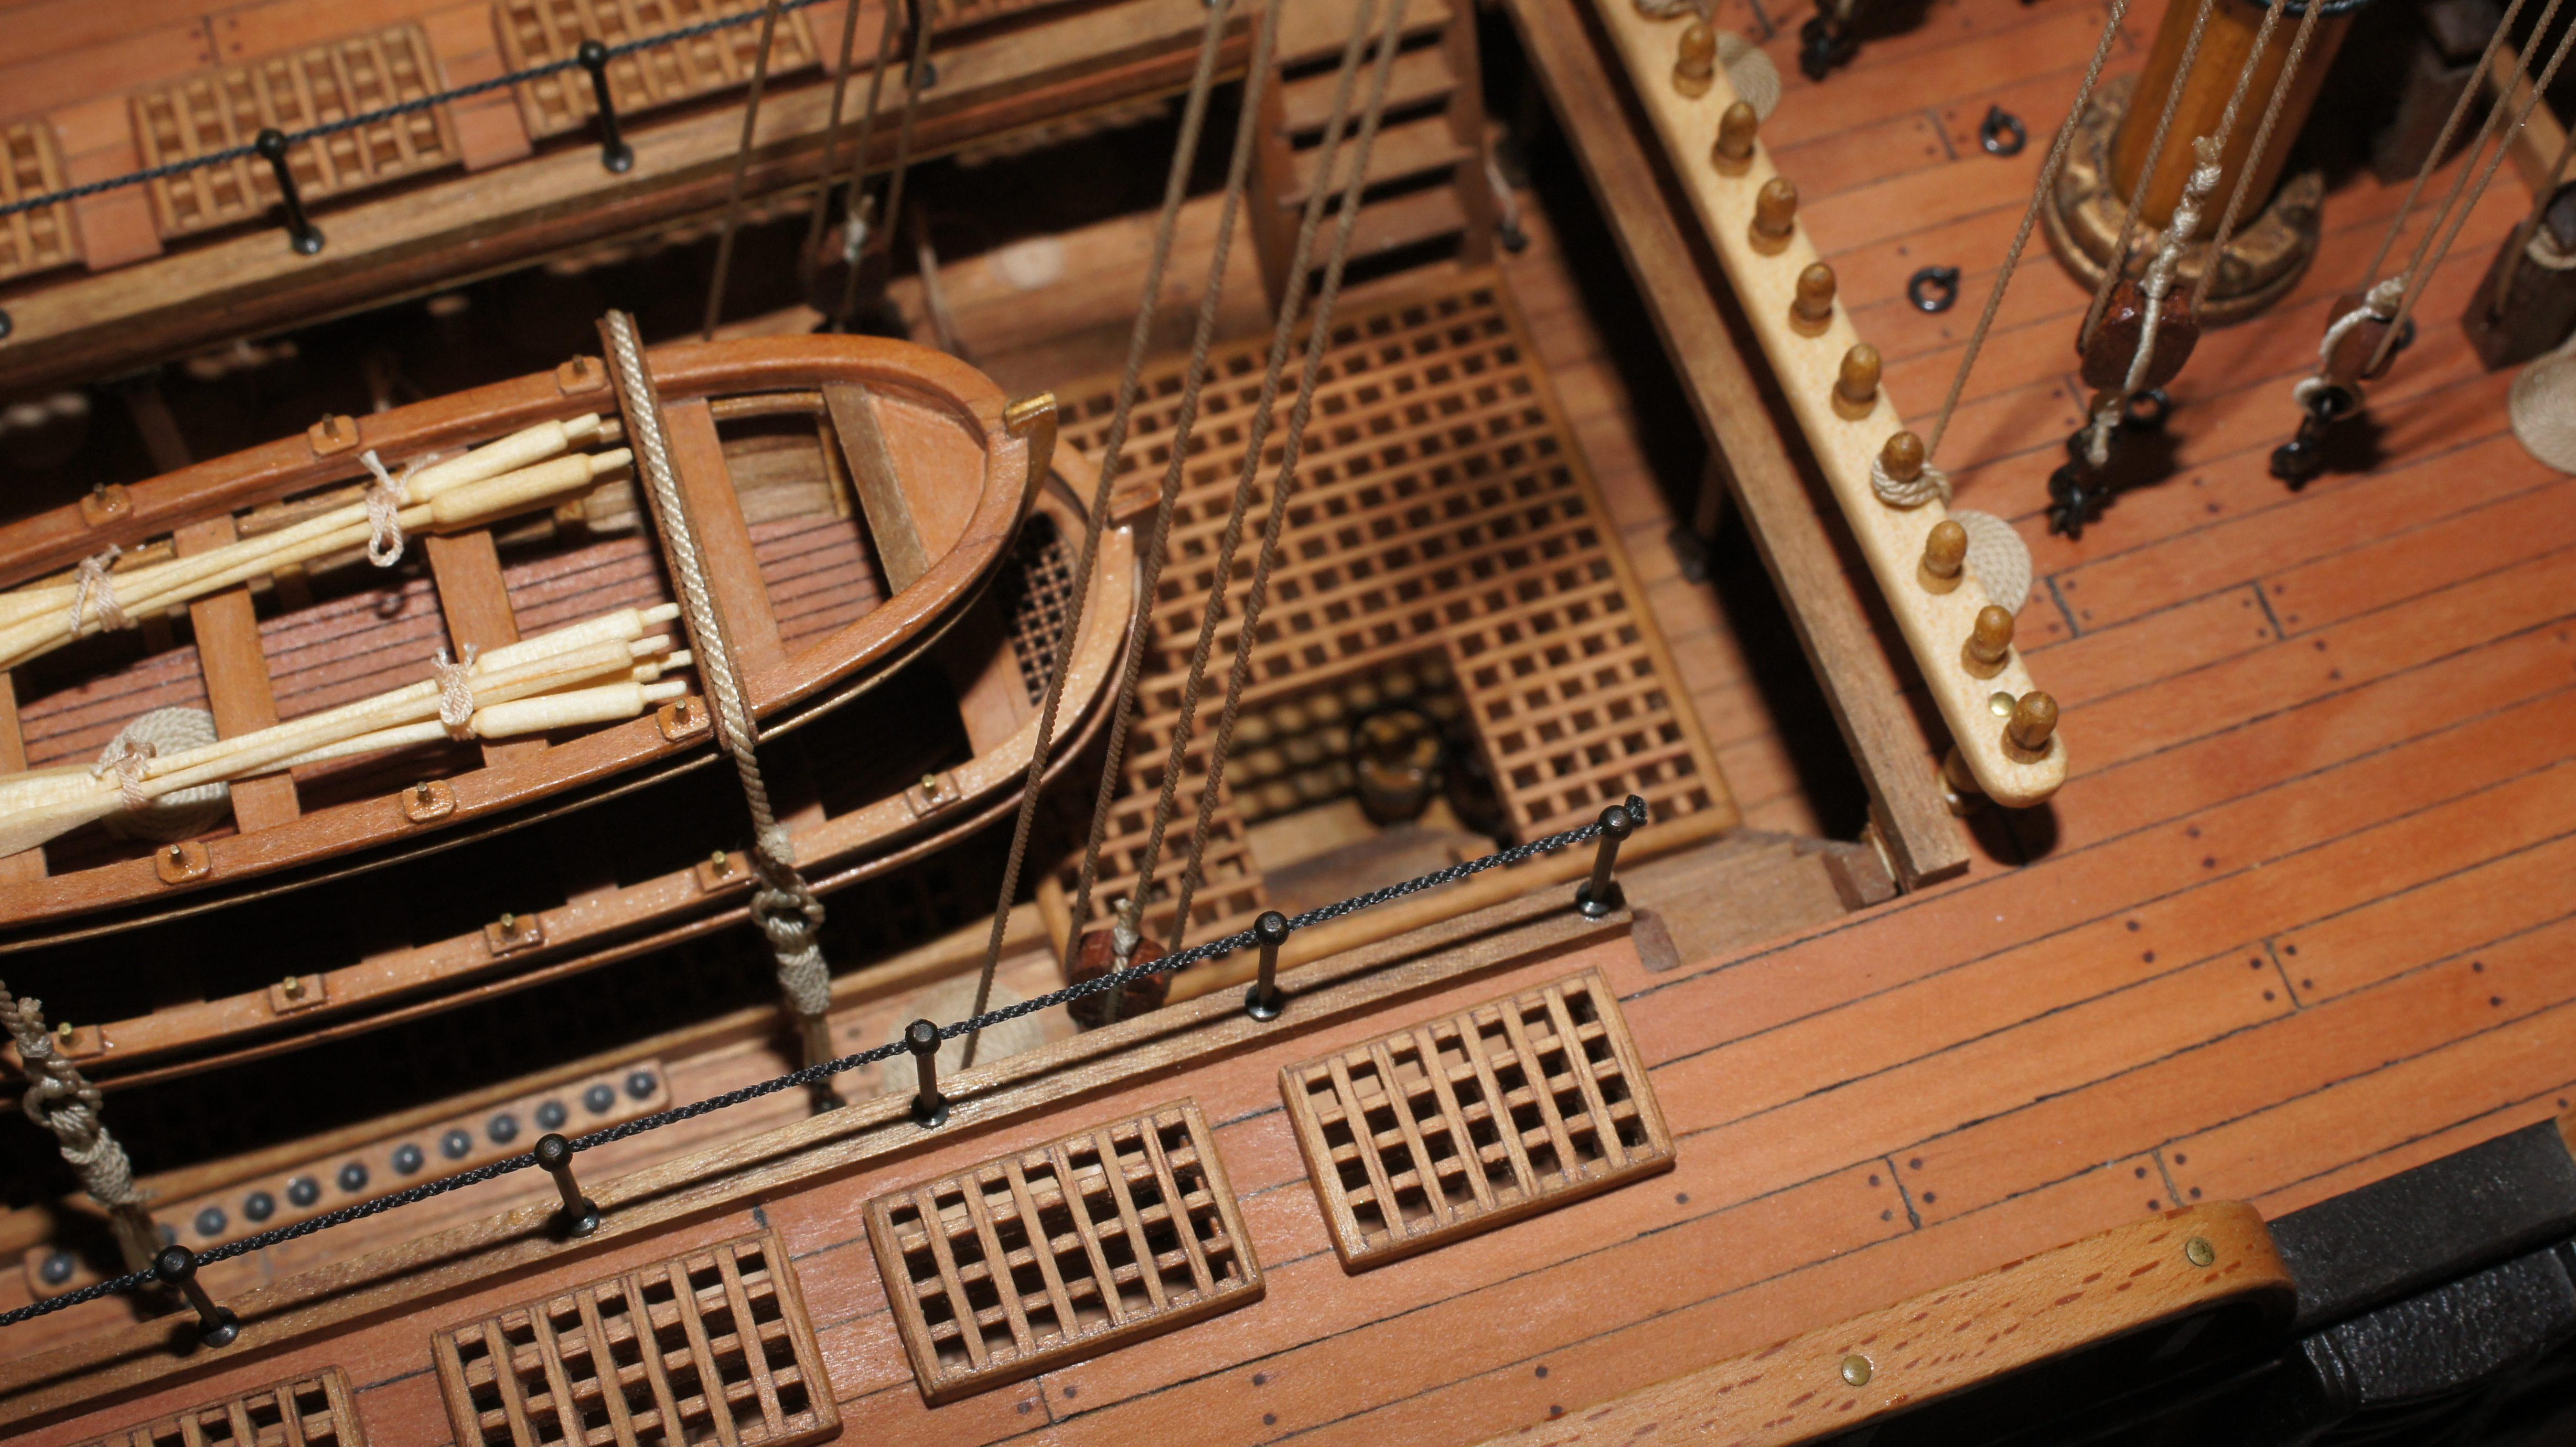 Основание палубы. Двенадцать апостолов линейный корабль, 1841. HMS Victory 1765 каюта капитана. Модель корабля Sirene масштаб 1:75. HMS Victory 1765 внутри.